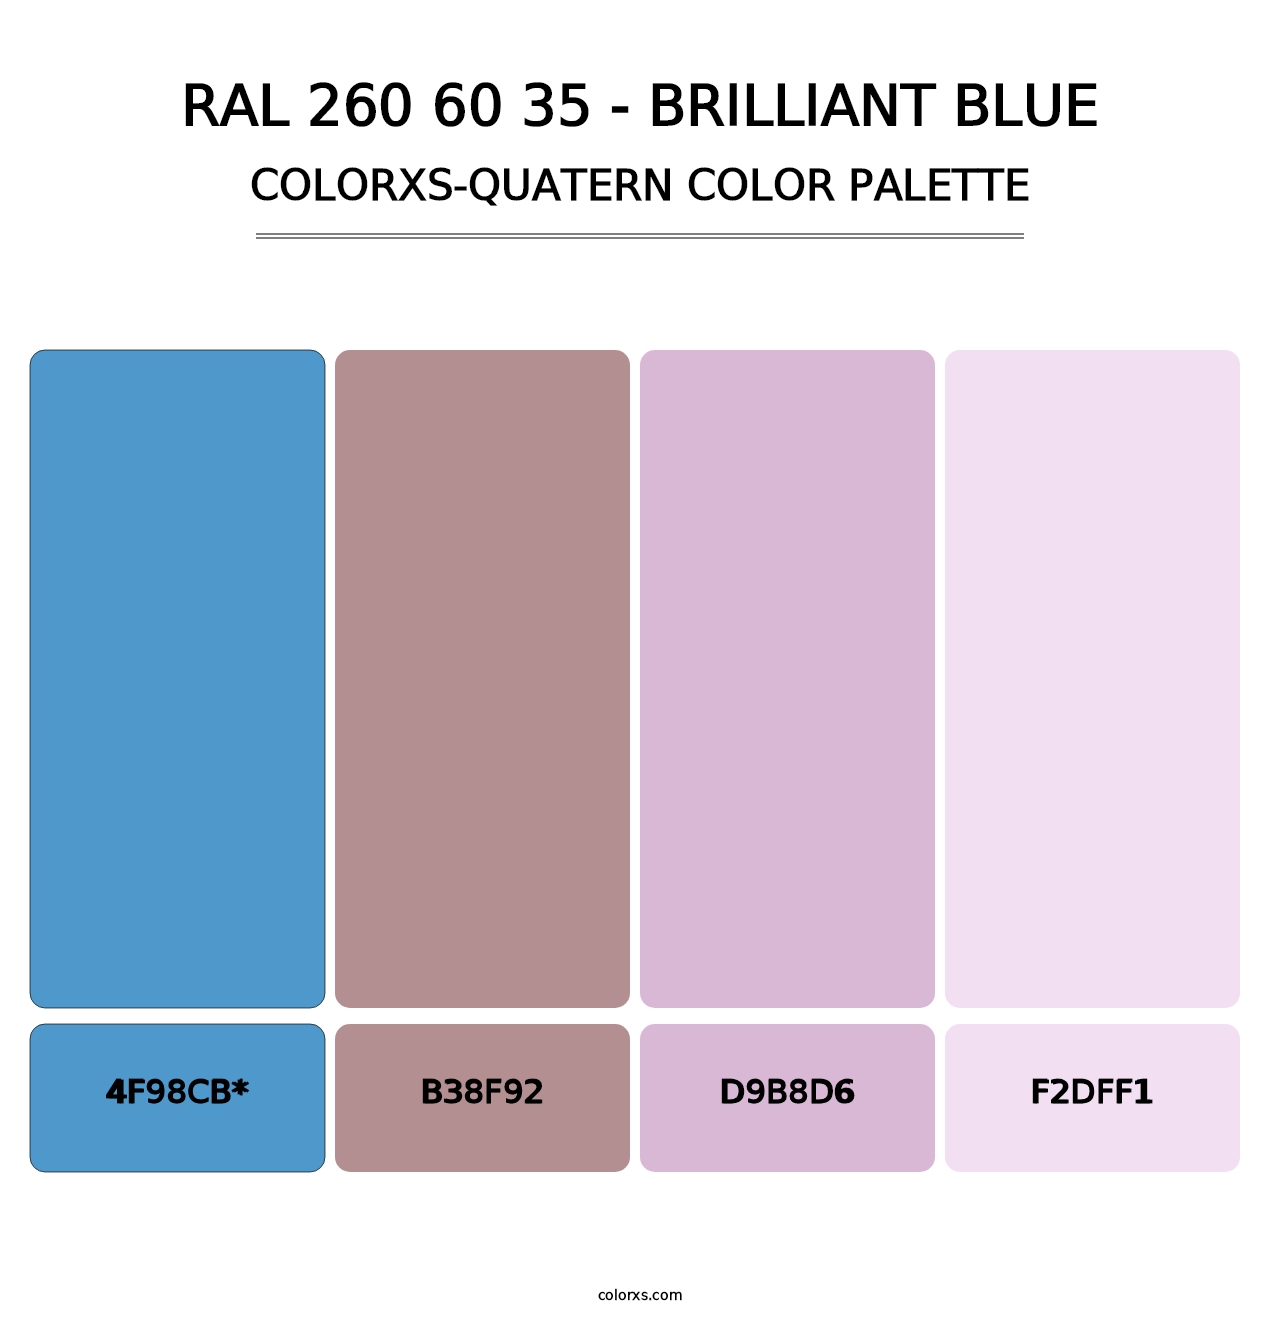 RAL 260 60 35 - Brilliant Blue - Colorxs Quatern Palette